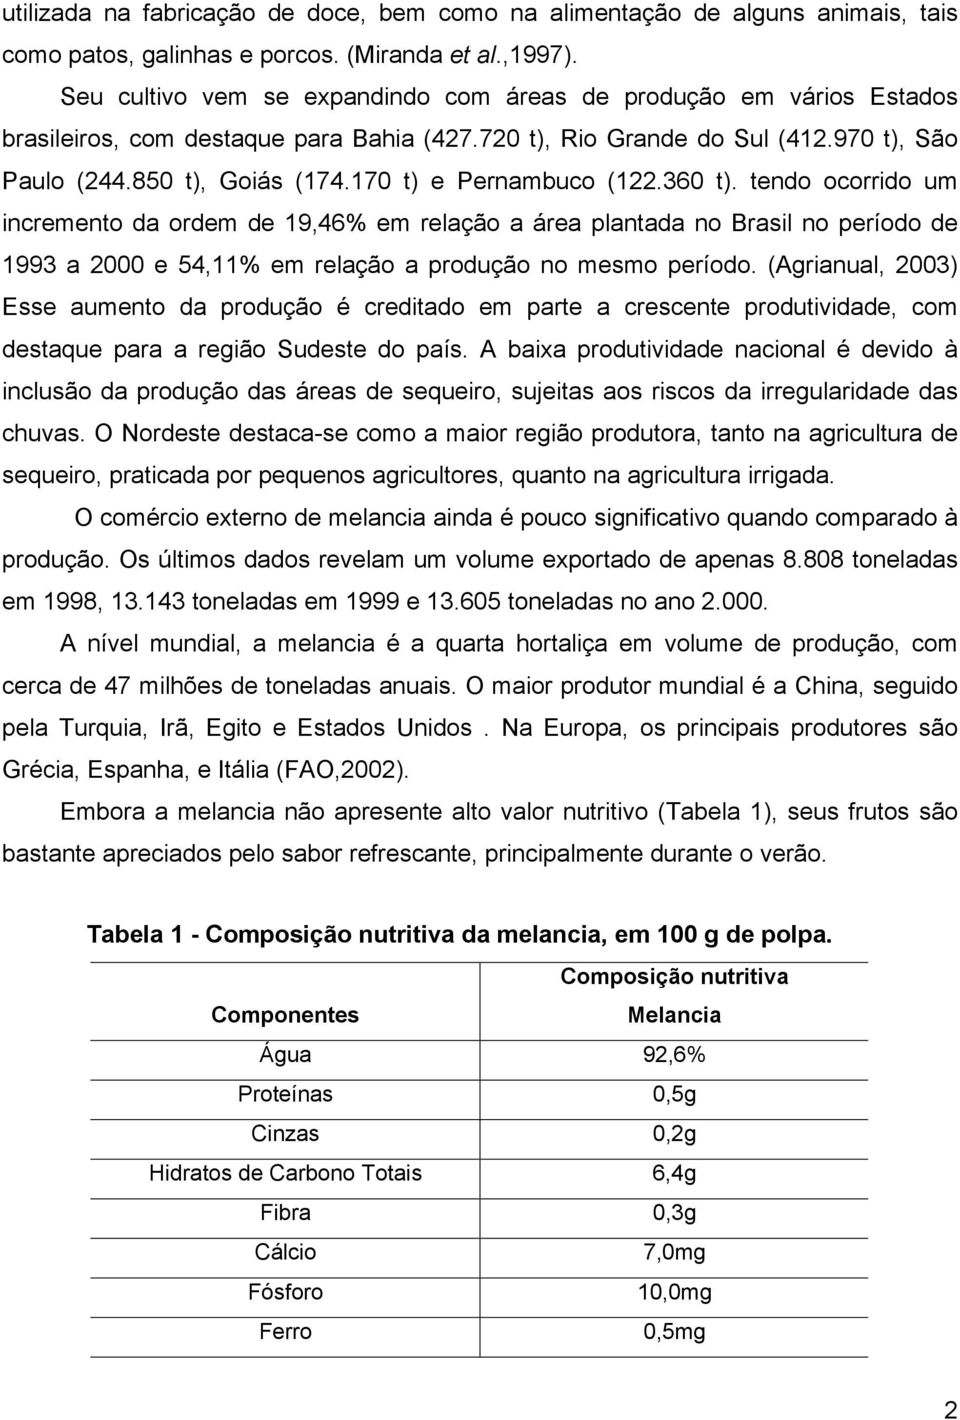 170 t) e Pernambuco (122.360 t). tendo ocorrido um incremento da ordem de 19,46% em relação a área plantada no Brasil no período de 1993 a 2000 e 54,11% em relação a produção no mesmo período.